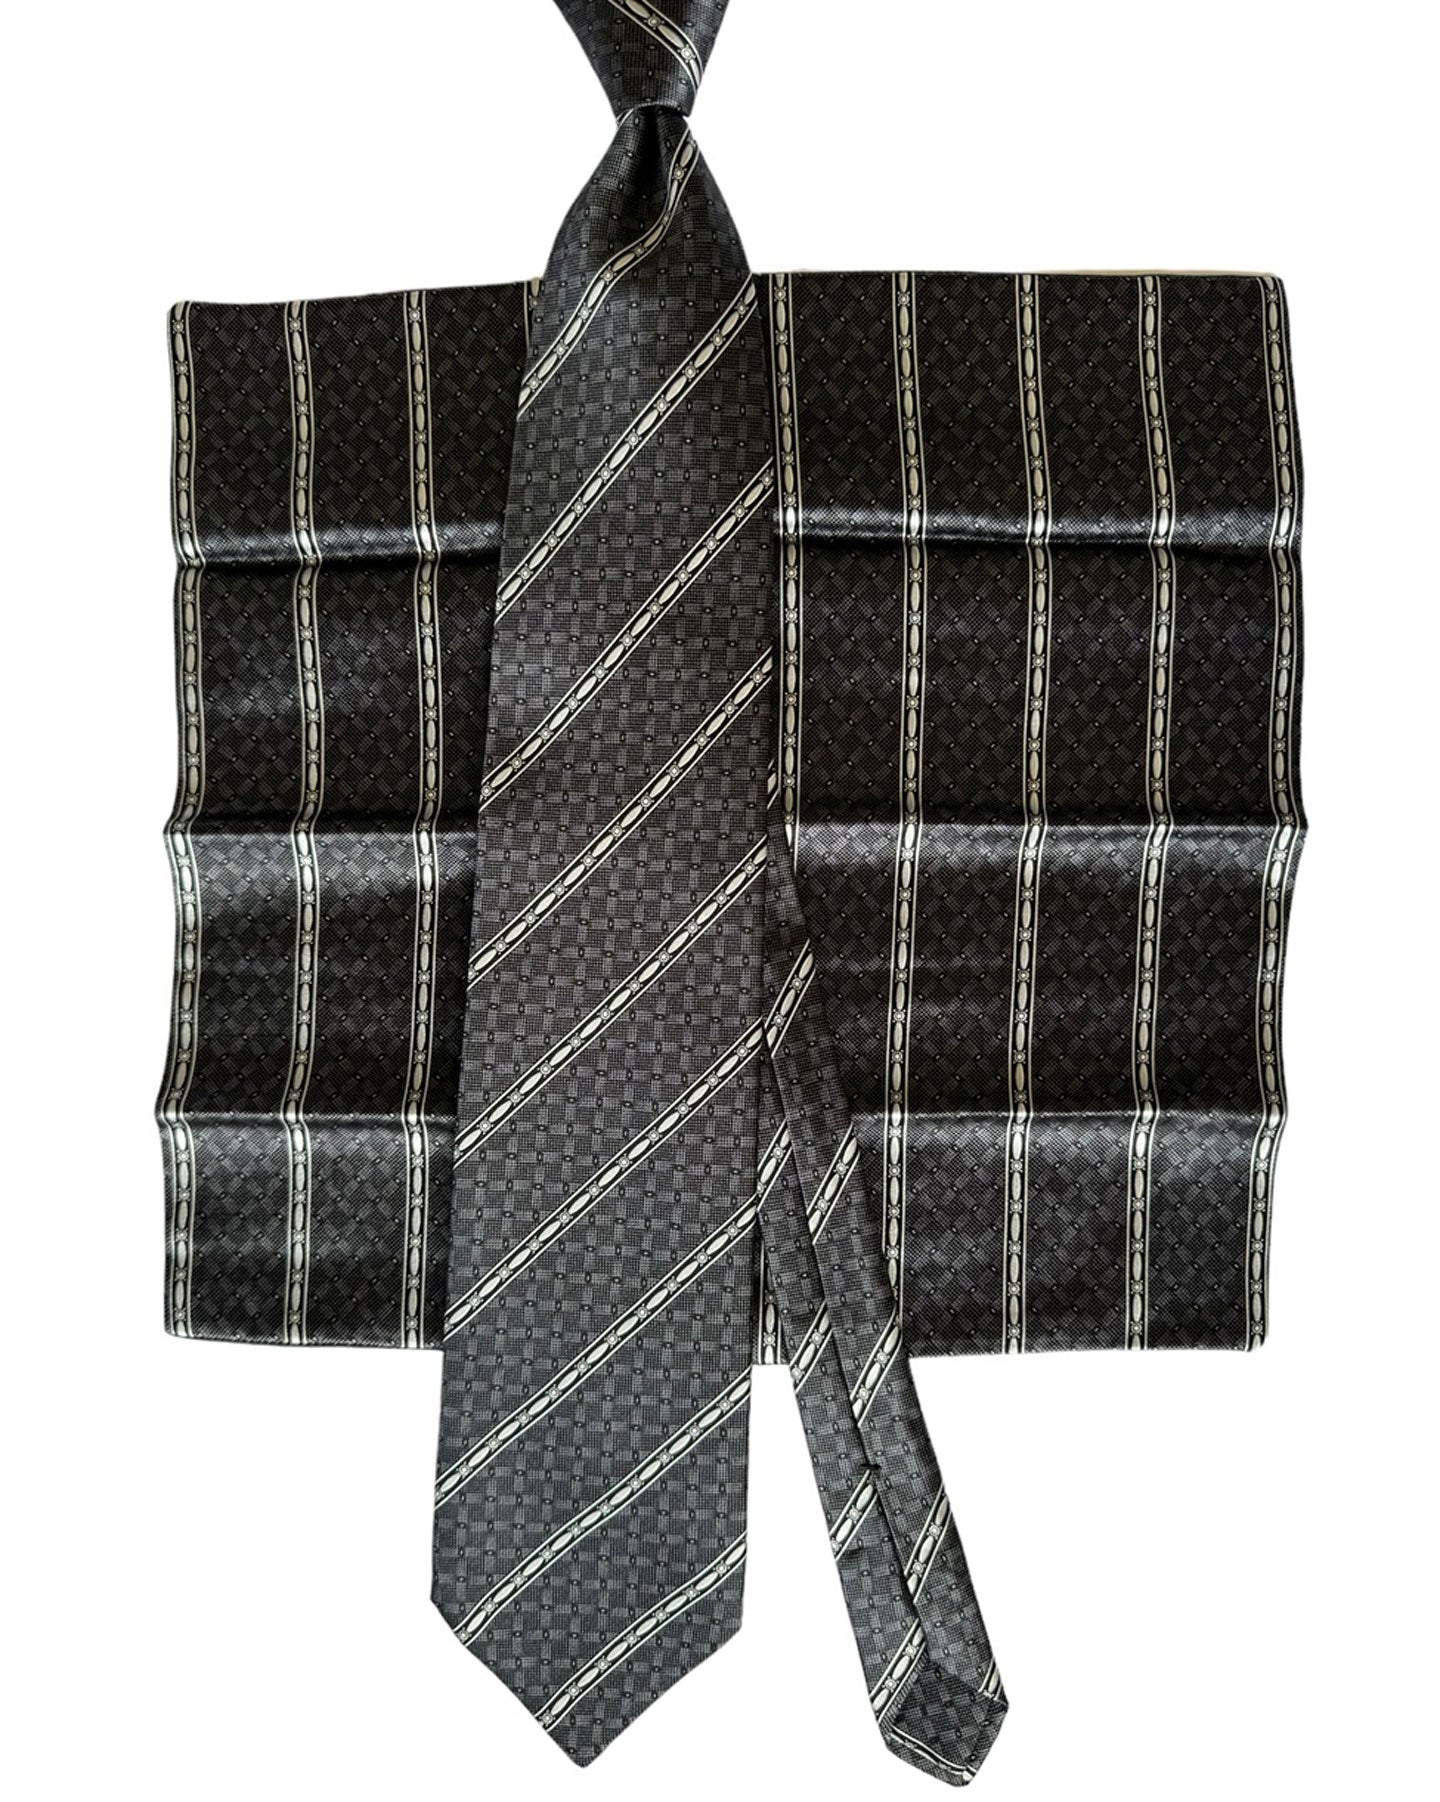 Zilli Tie & Pocket Square Set Black Ivory Gingham Stripes Design